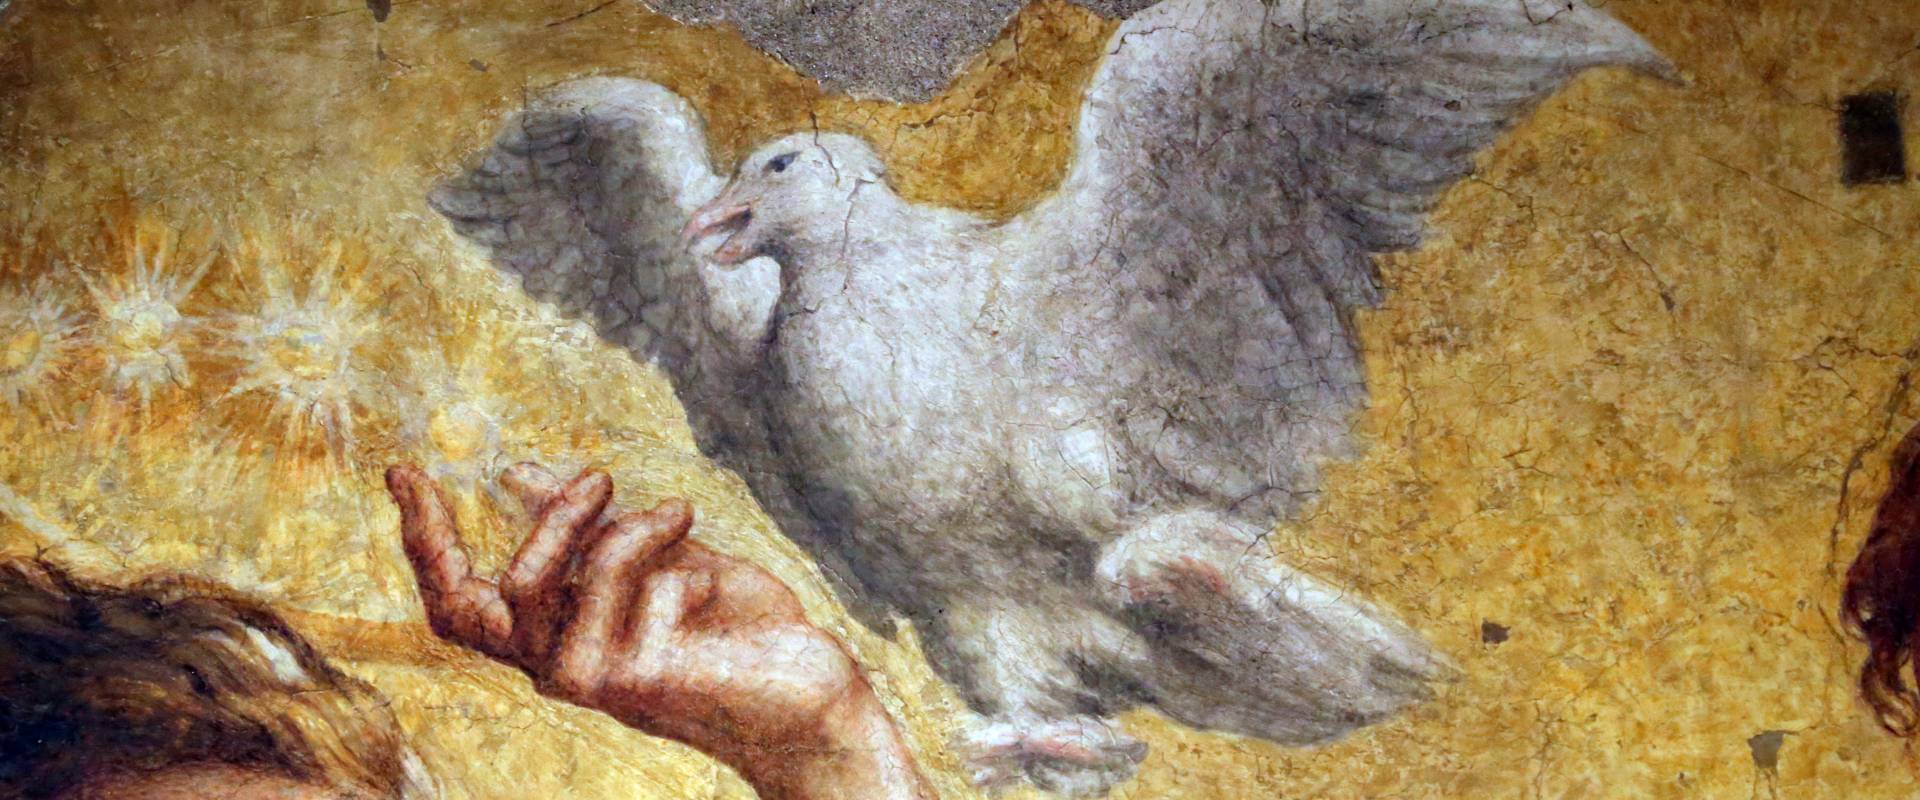 Correggio incoronazione della vergine, 1522 ca., da san giovanni evangelista, 03 colomba dello spirito santo photo by Sailko